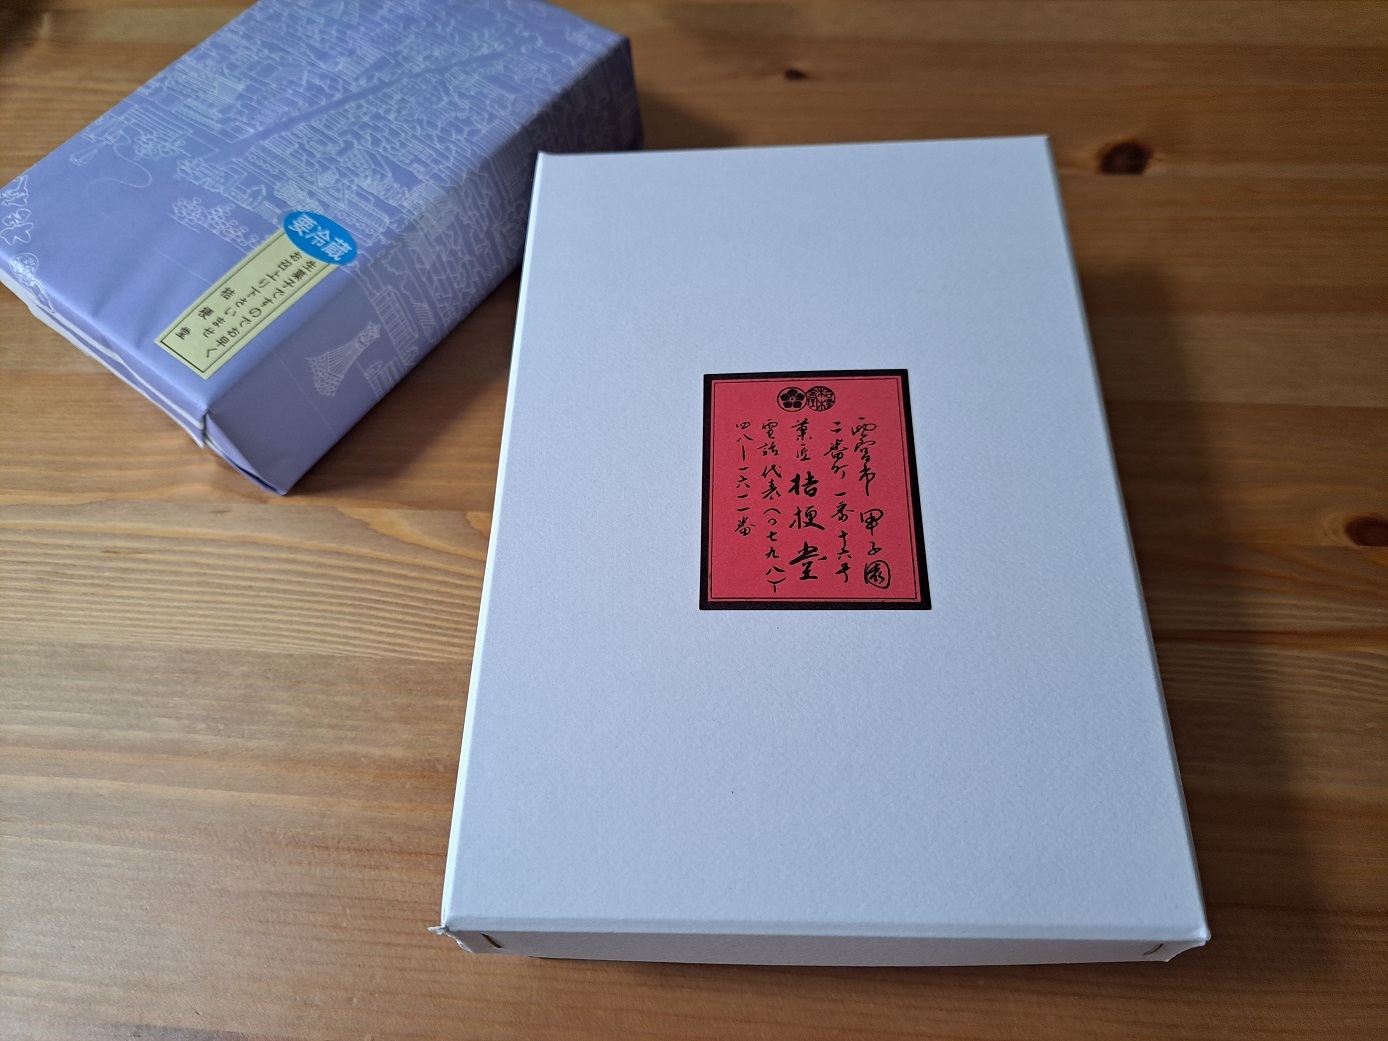 現在の店主、高尾哲司さんのお祖父さまでもある「桔梗堂」創業者が描いた西宮市の地図の包装紙と箱の文字